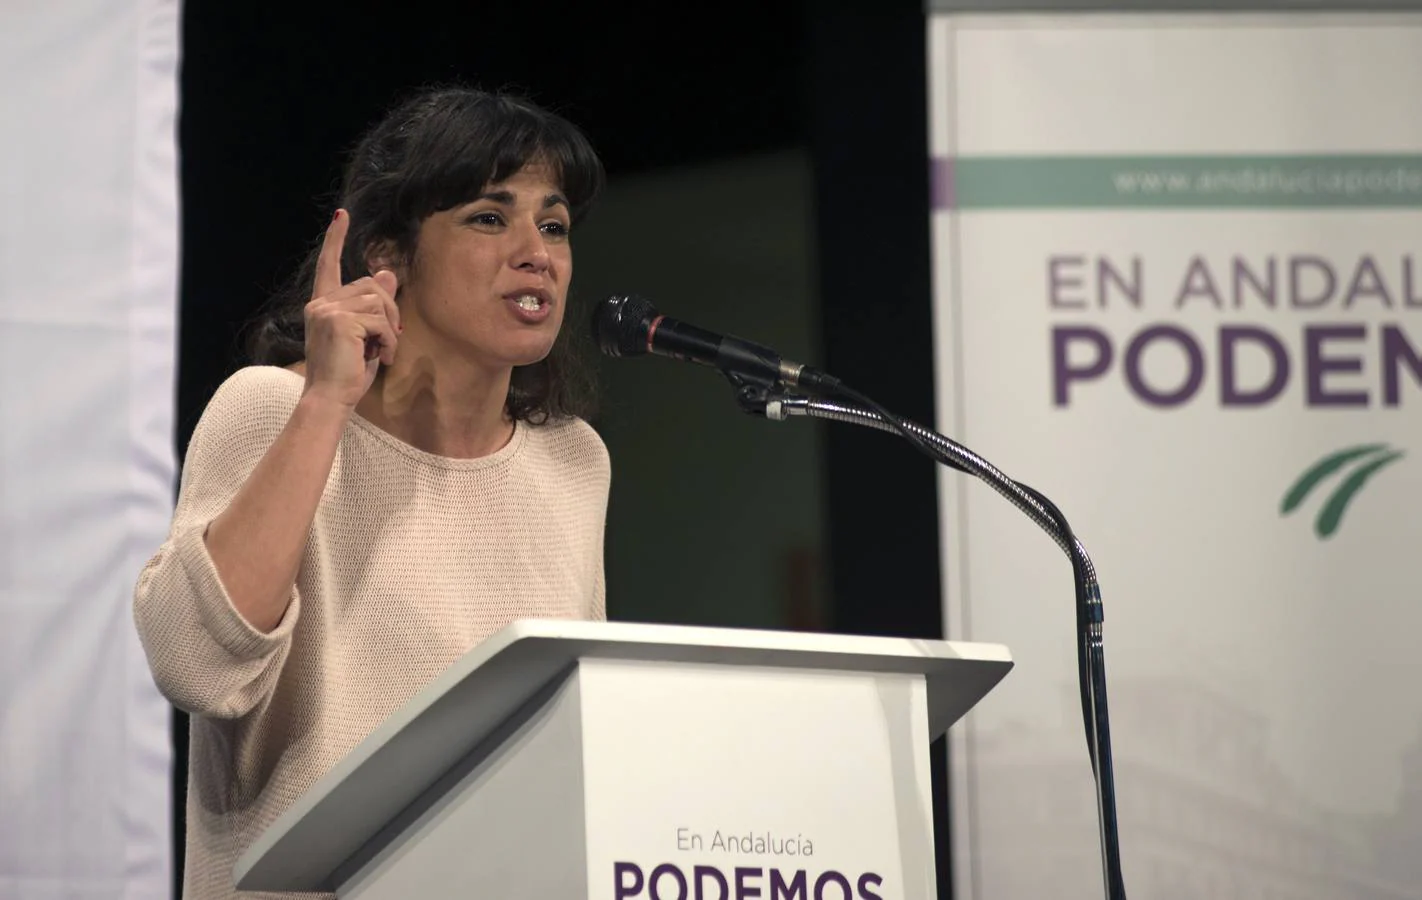 La líder de Podemos en Andalucía, Teresa Rodríguez, ocupa el décimo último puesto en el ránking de políticos más buscados, donde han sido ellas las predominantes.